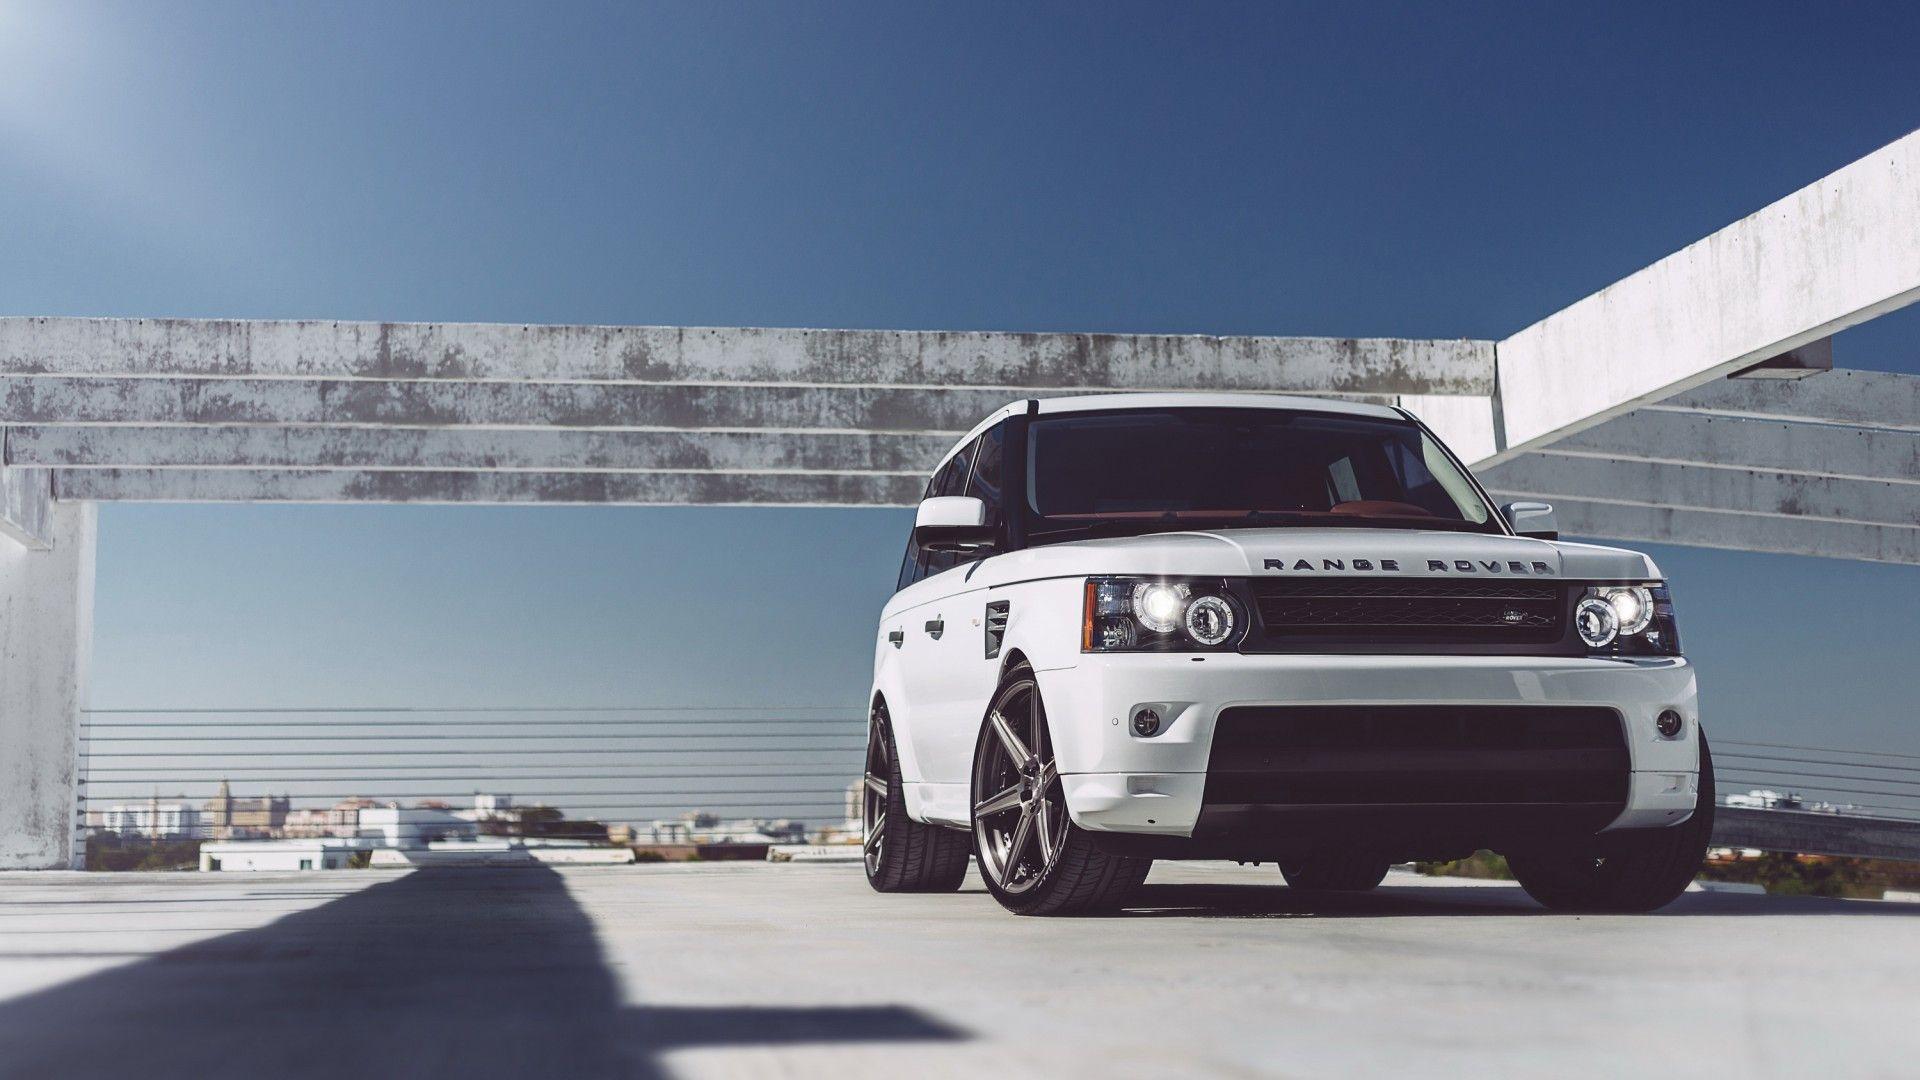 White Range Rover Wallpaper Of Cars /white